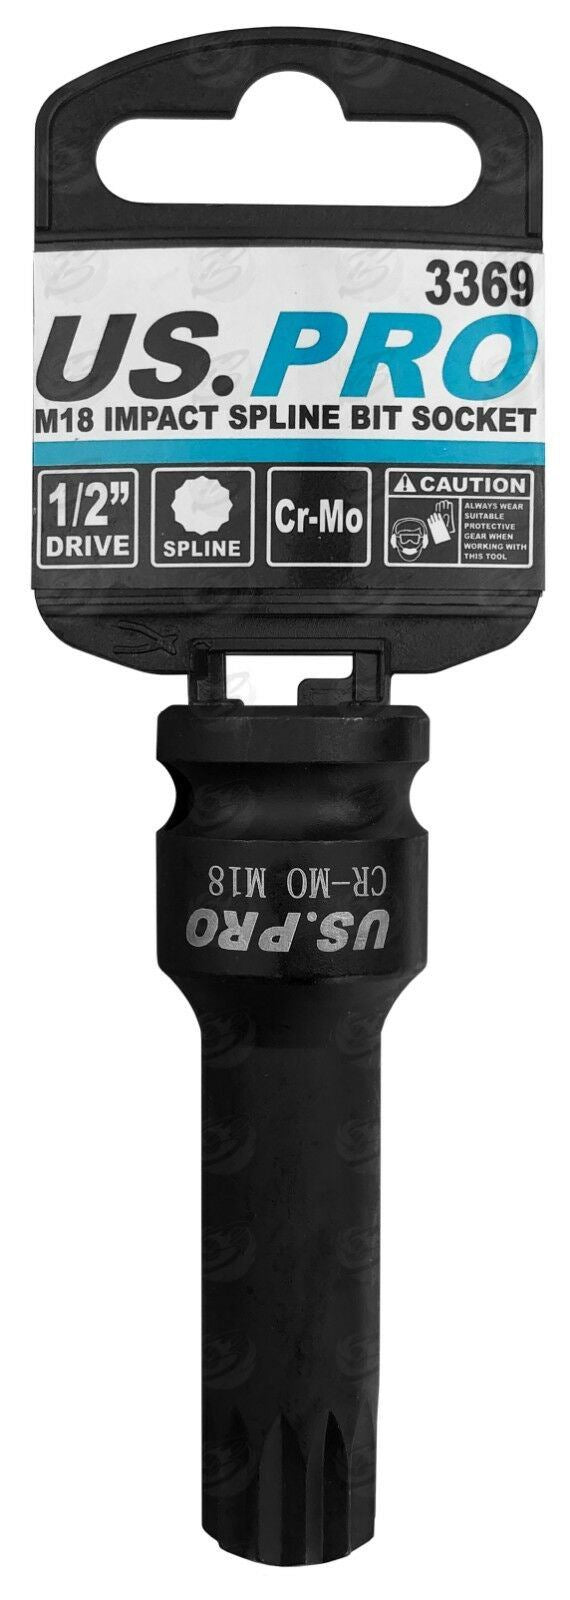 US PRO M18 1/2" DRIVE 78MM LONG IMPACT SPLINE BIT SOCKET ( SINGLE )